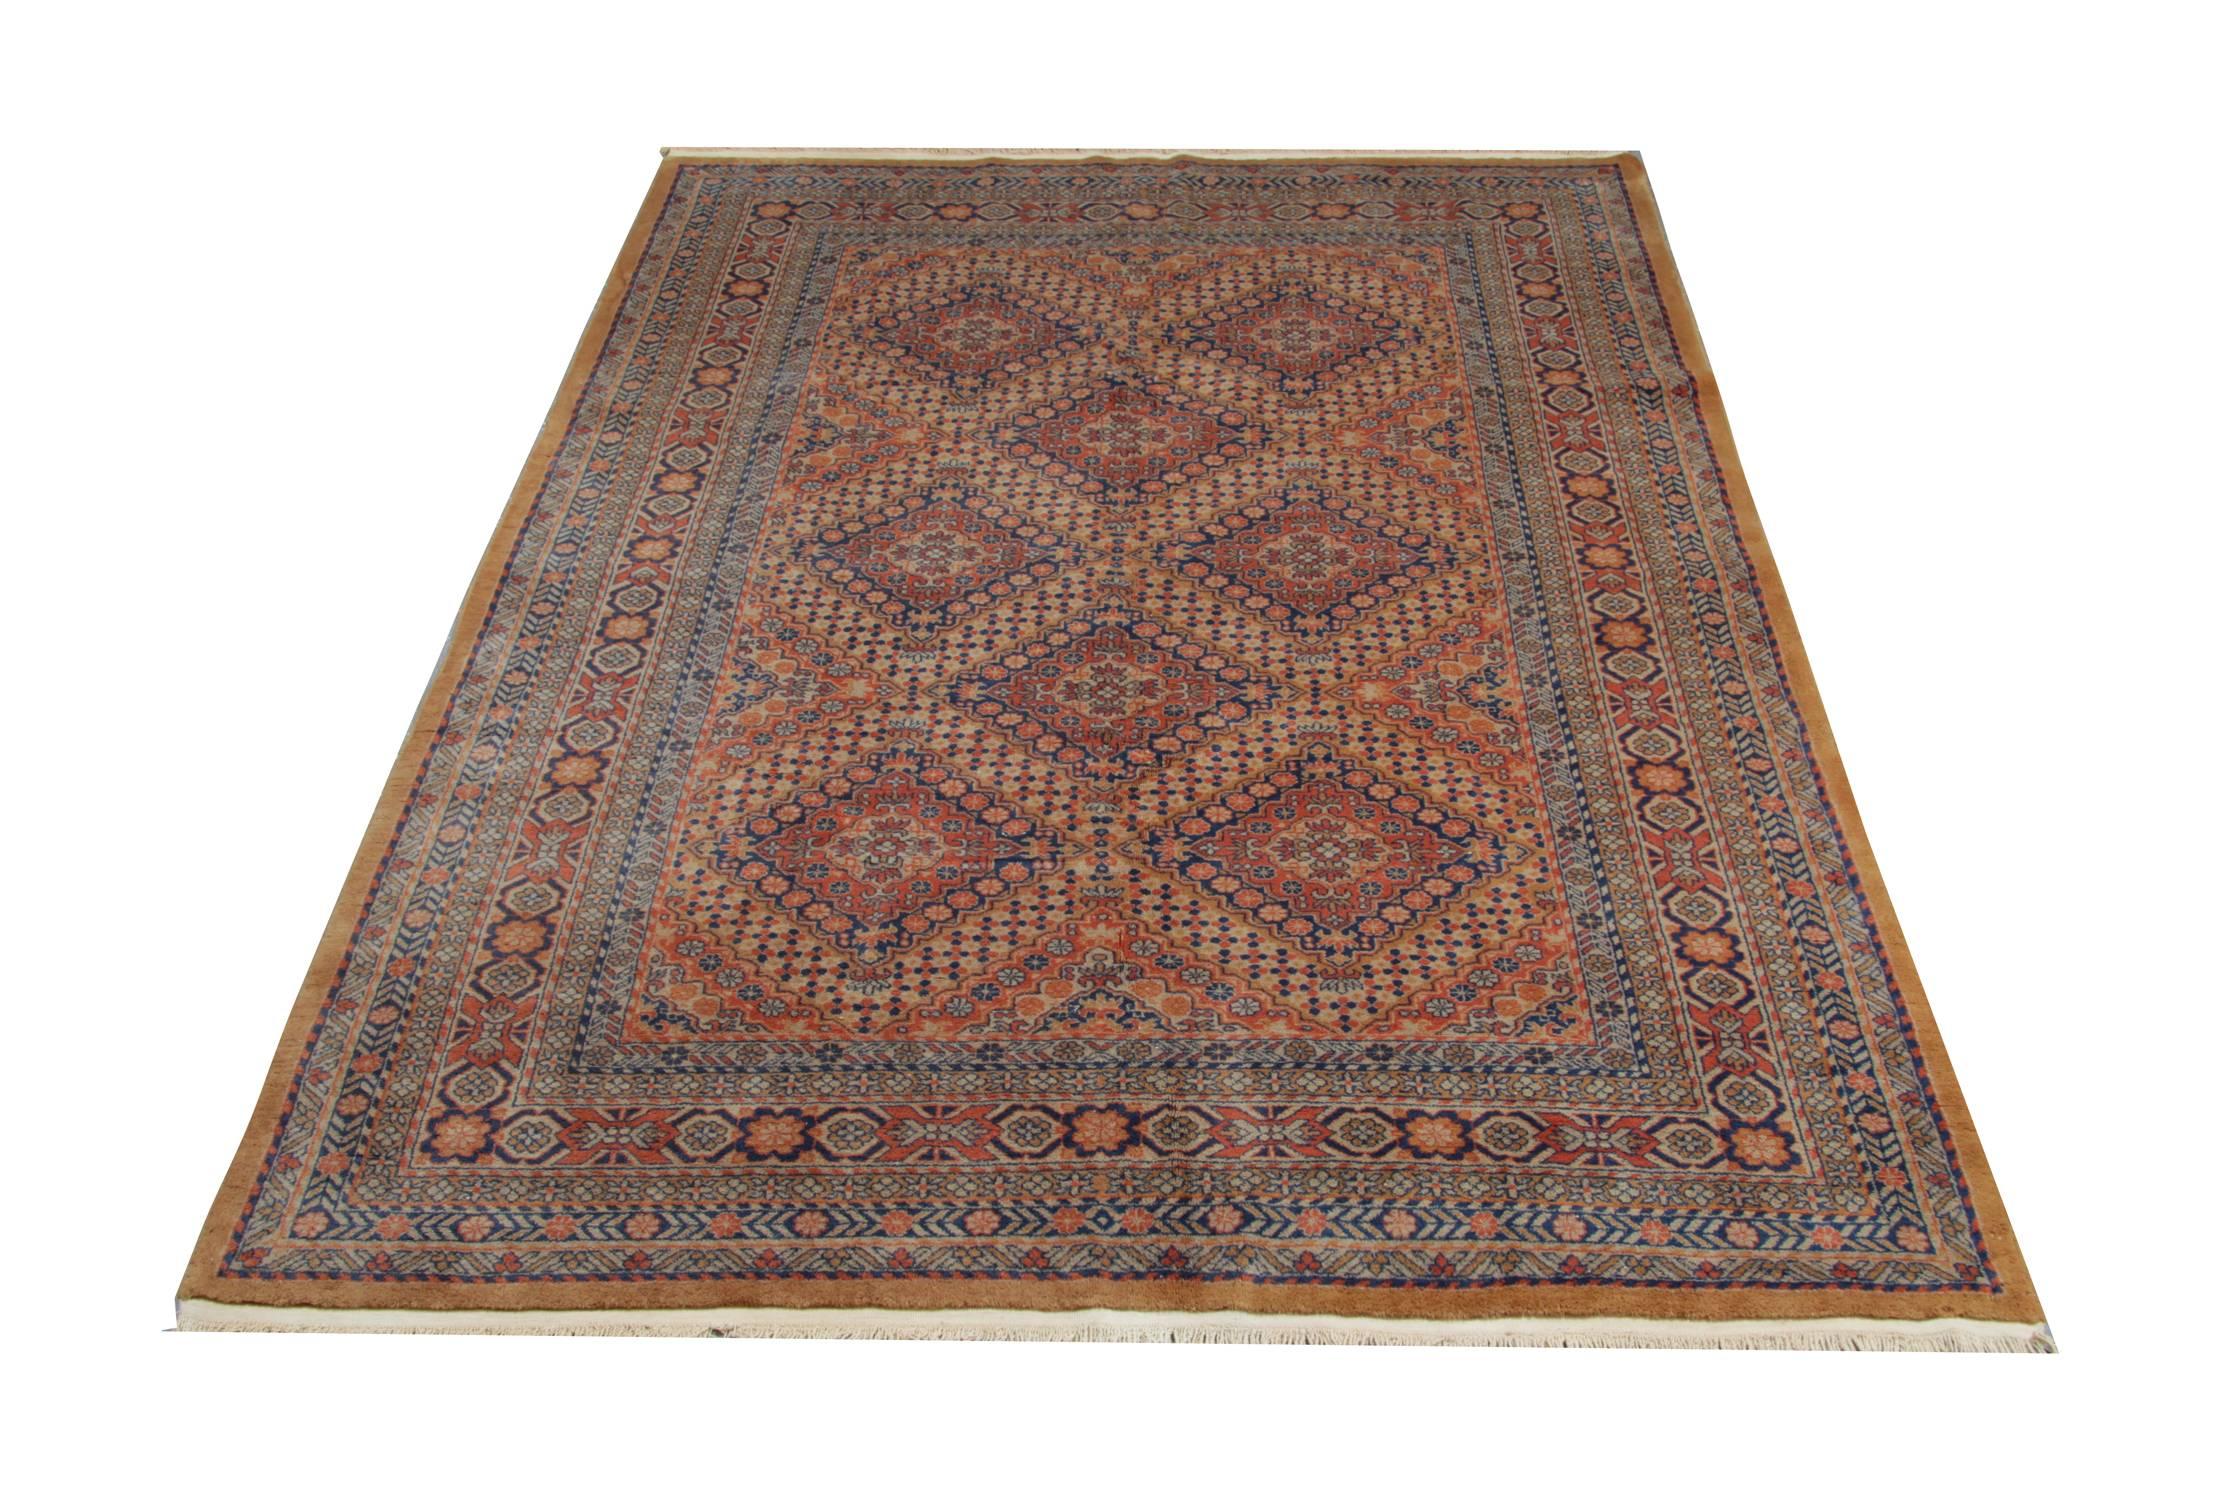 Alte indische Teppiche werden aus Wolle und Baumwolle hergestellt und für diese traditionellen Teppiche werden nur 100% natürliche Farbstoffe verwendet. Dieser geometrische Teppich ist in einem ausgezeichneten Zustand. Der graue Teppich ist